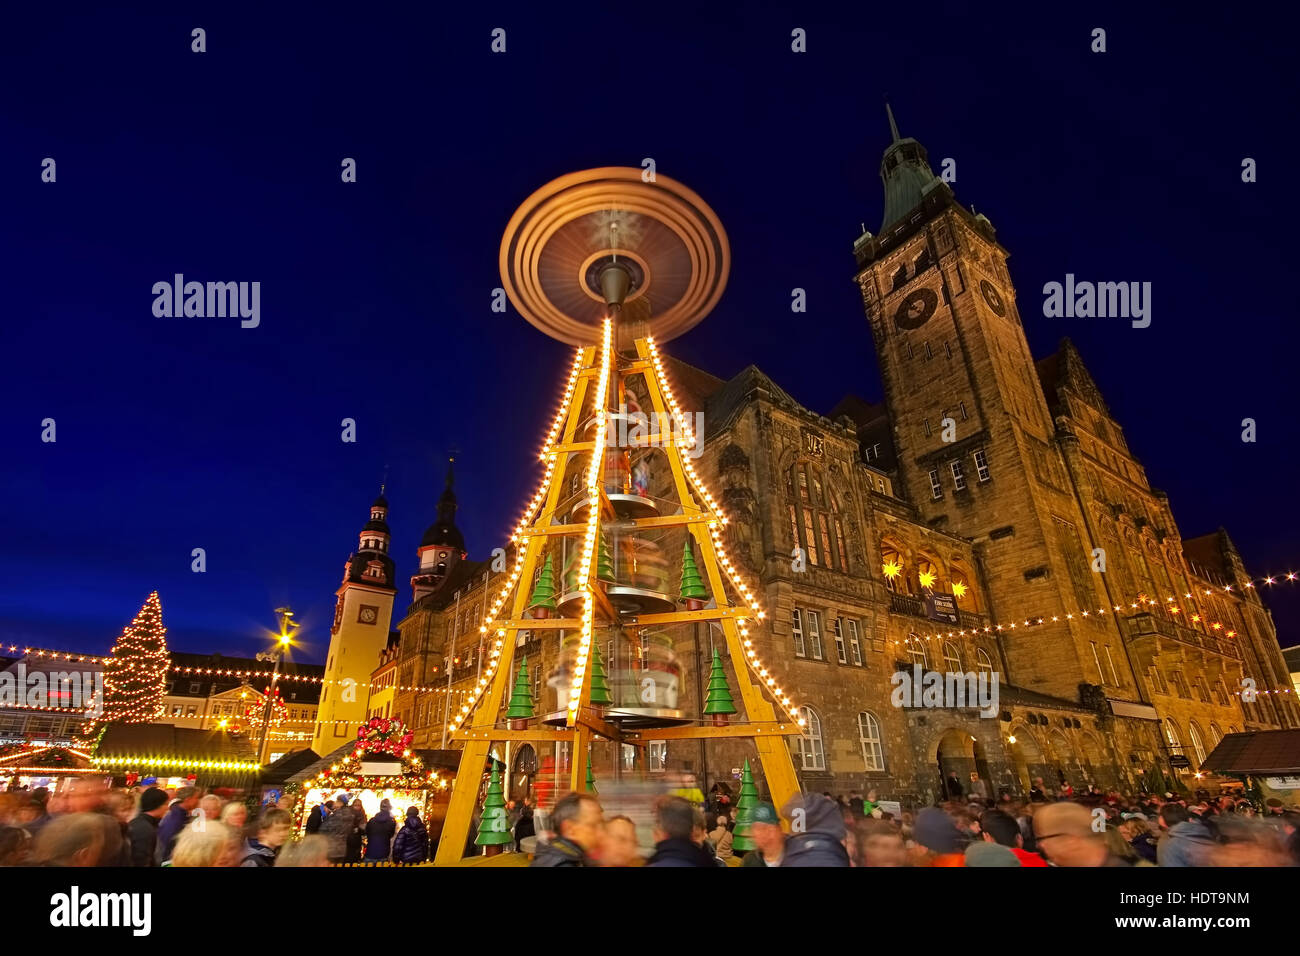 Chemnitz Weihnachtsmarkt - Chemnitz mercatino di Natale in Germania Foto Stock